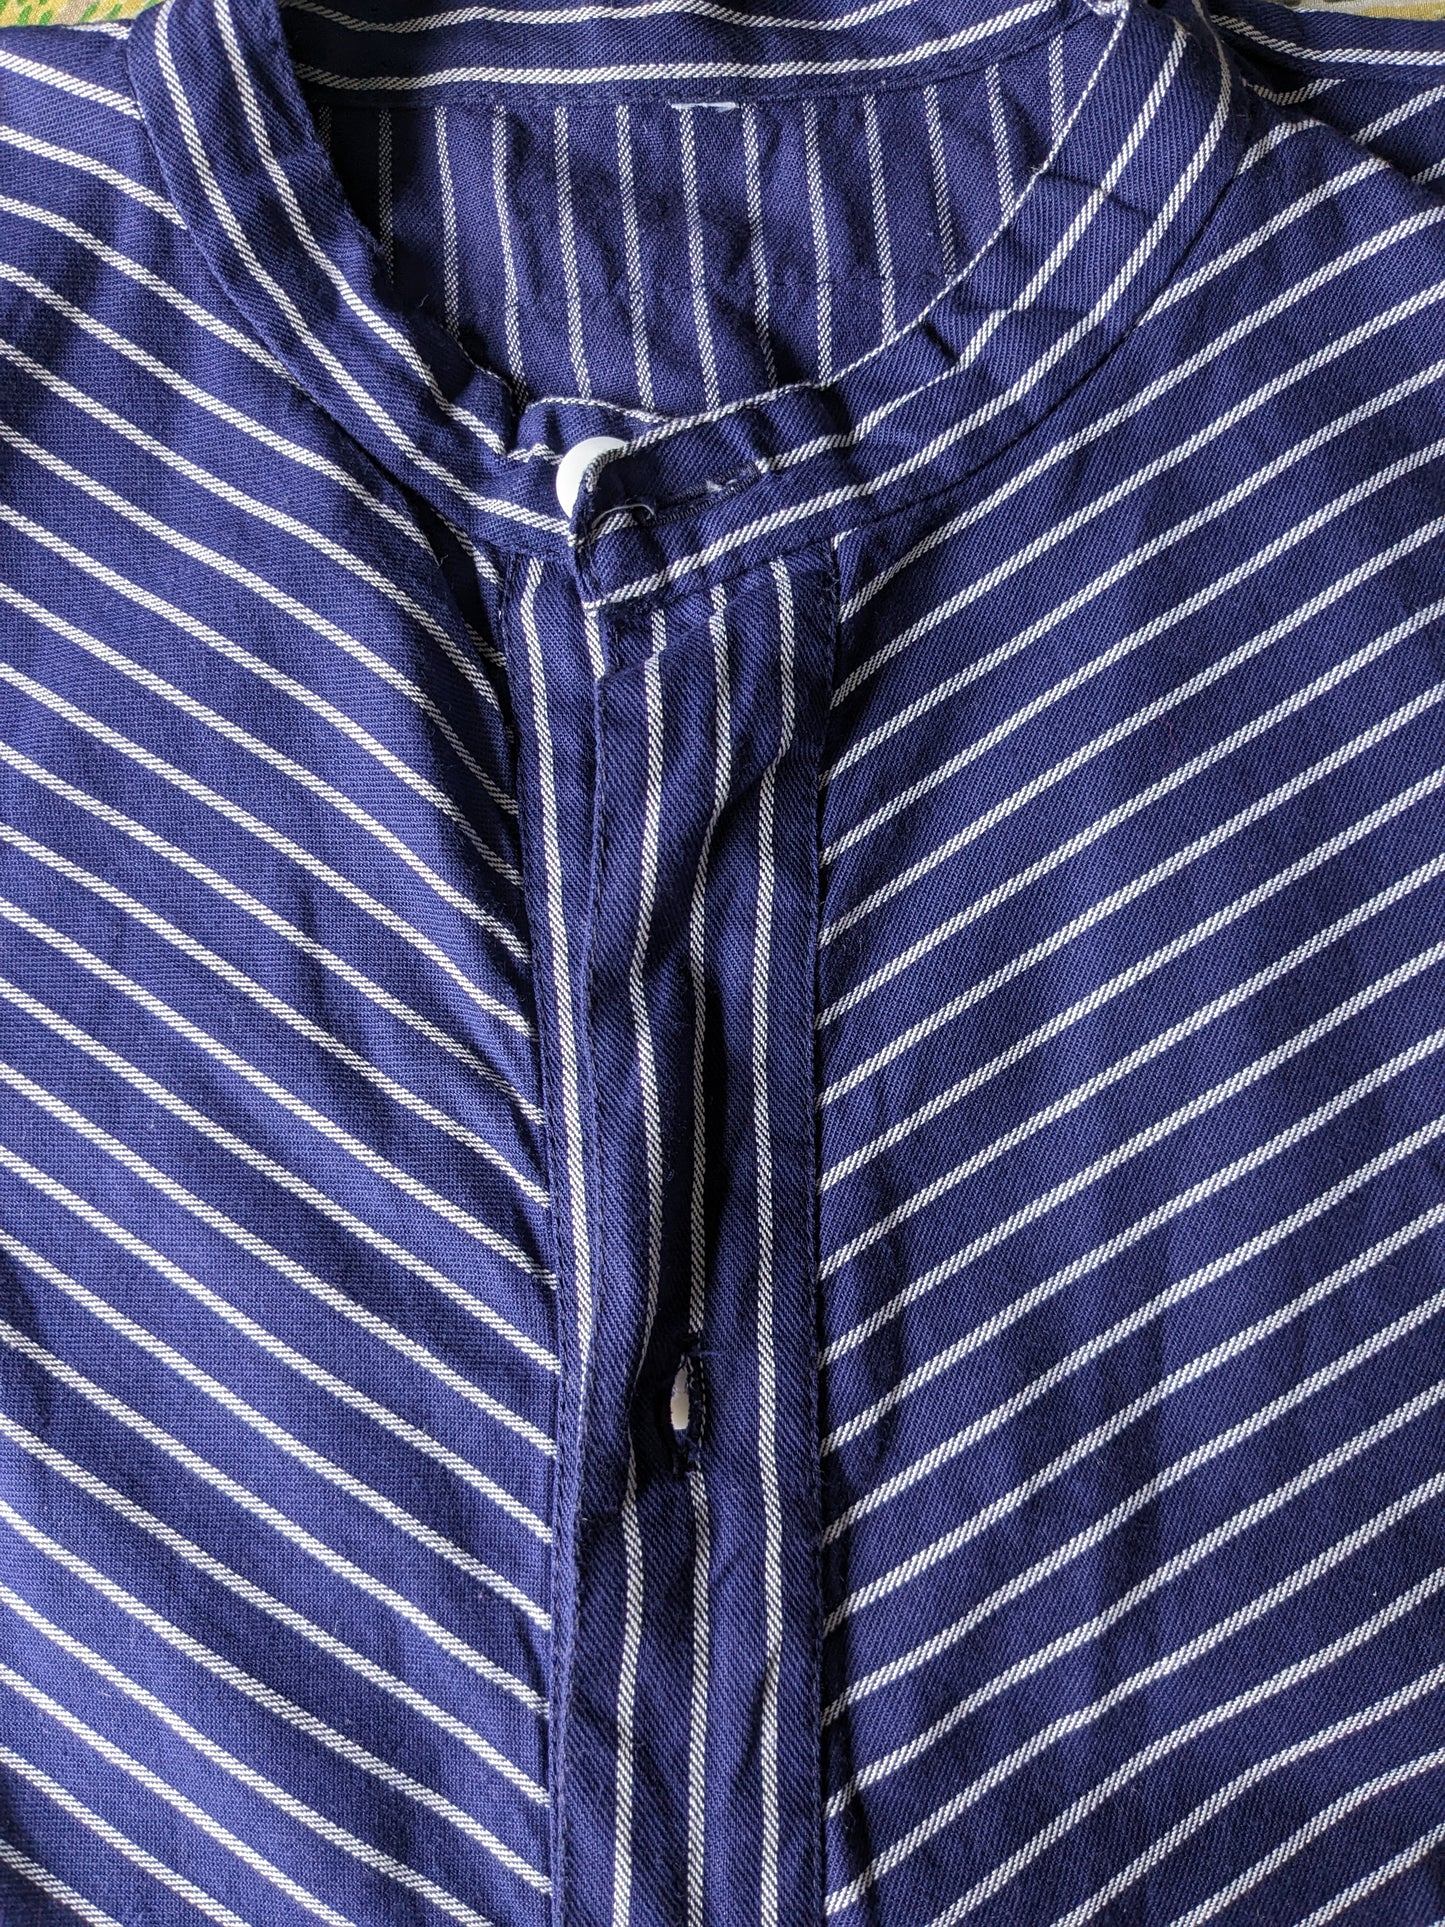 Magion / camicia da polo Duster vintage con colletto rialzato / agricoltori / MAO. Strisce bianche blu. Dimensione XXL / 2XL